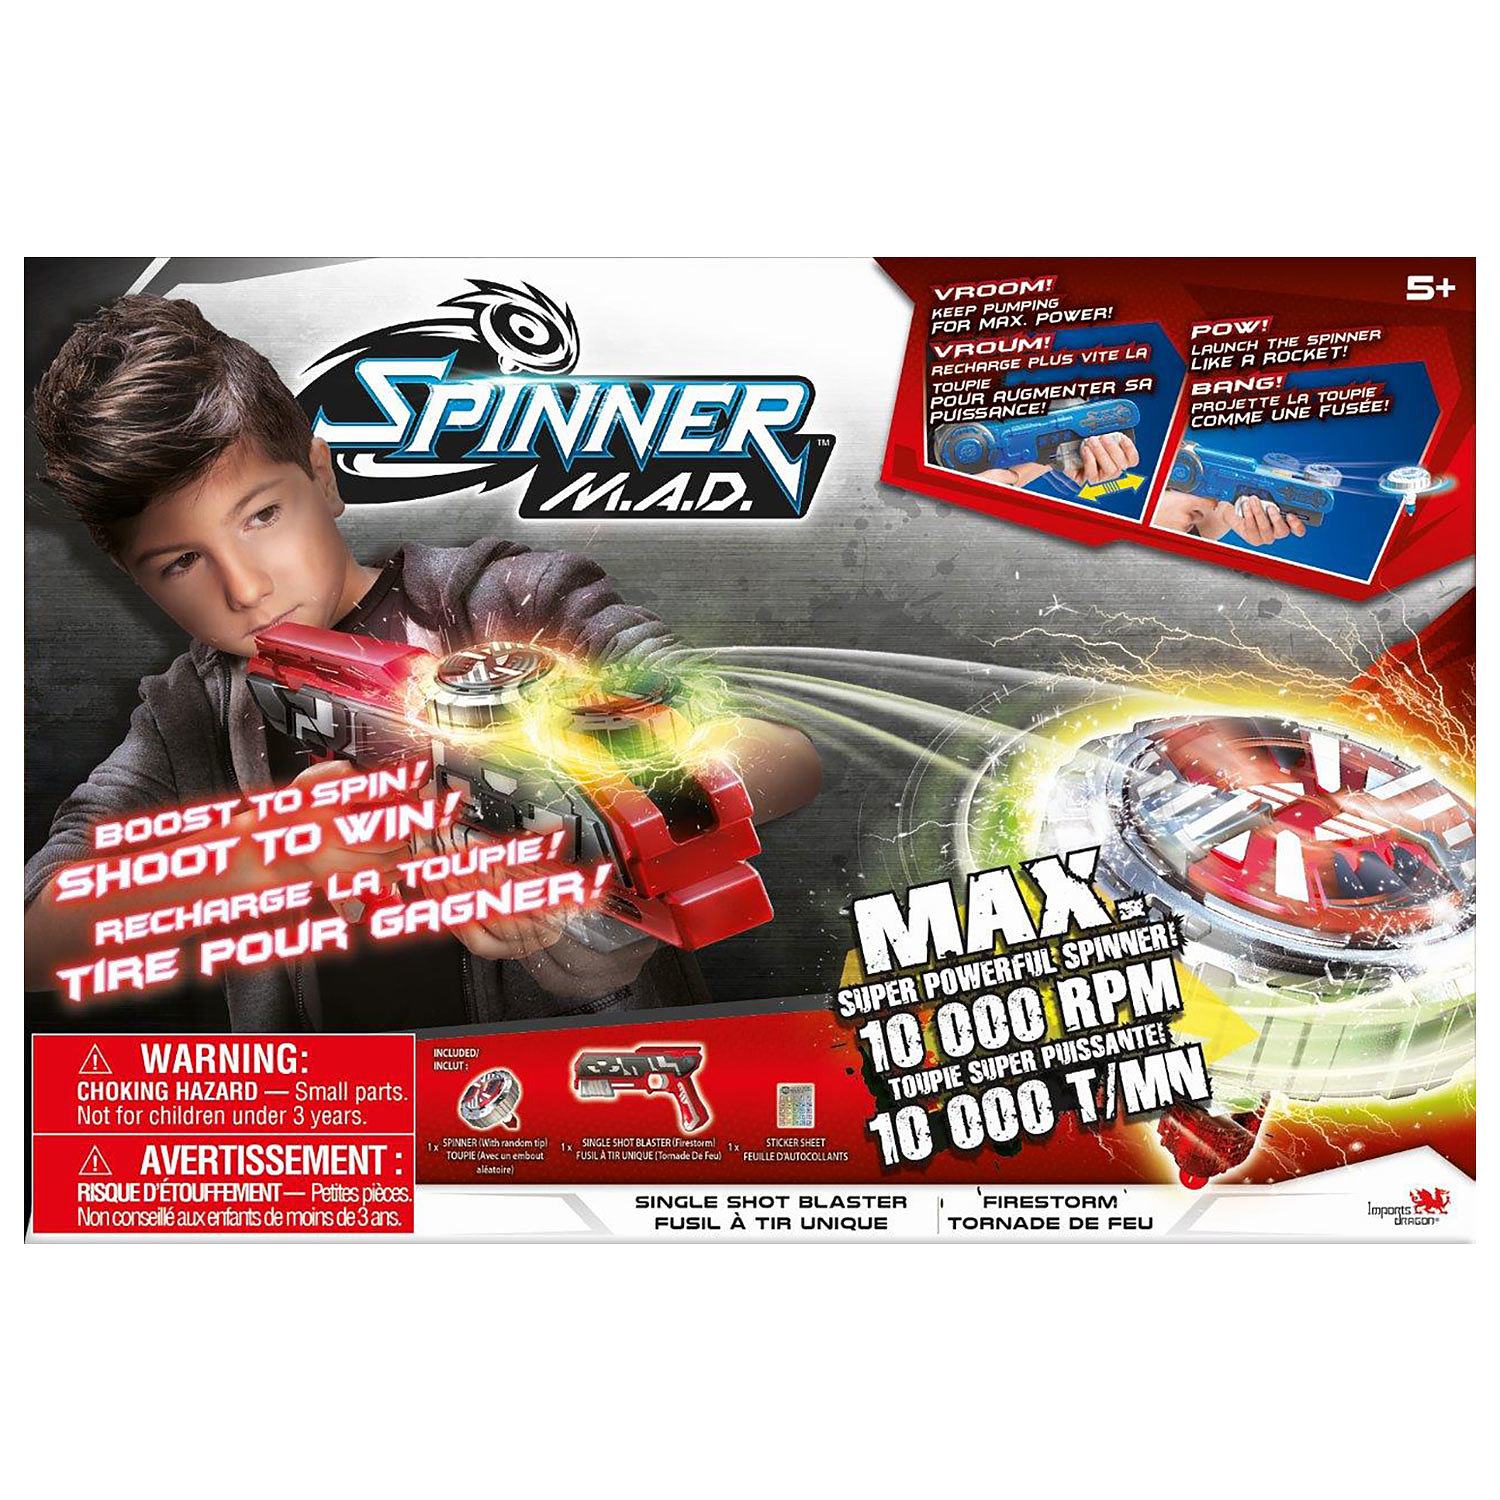 Spinner M.A.D. - Single shot blaster "Firestorm"